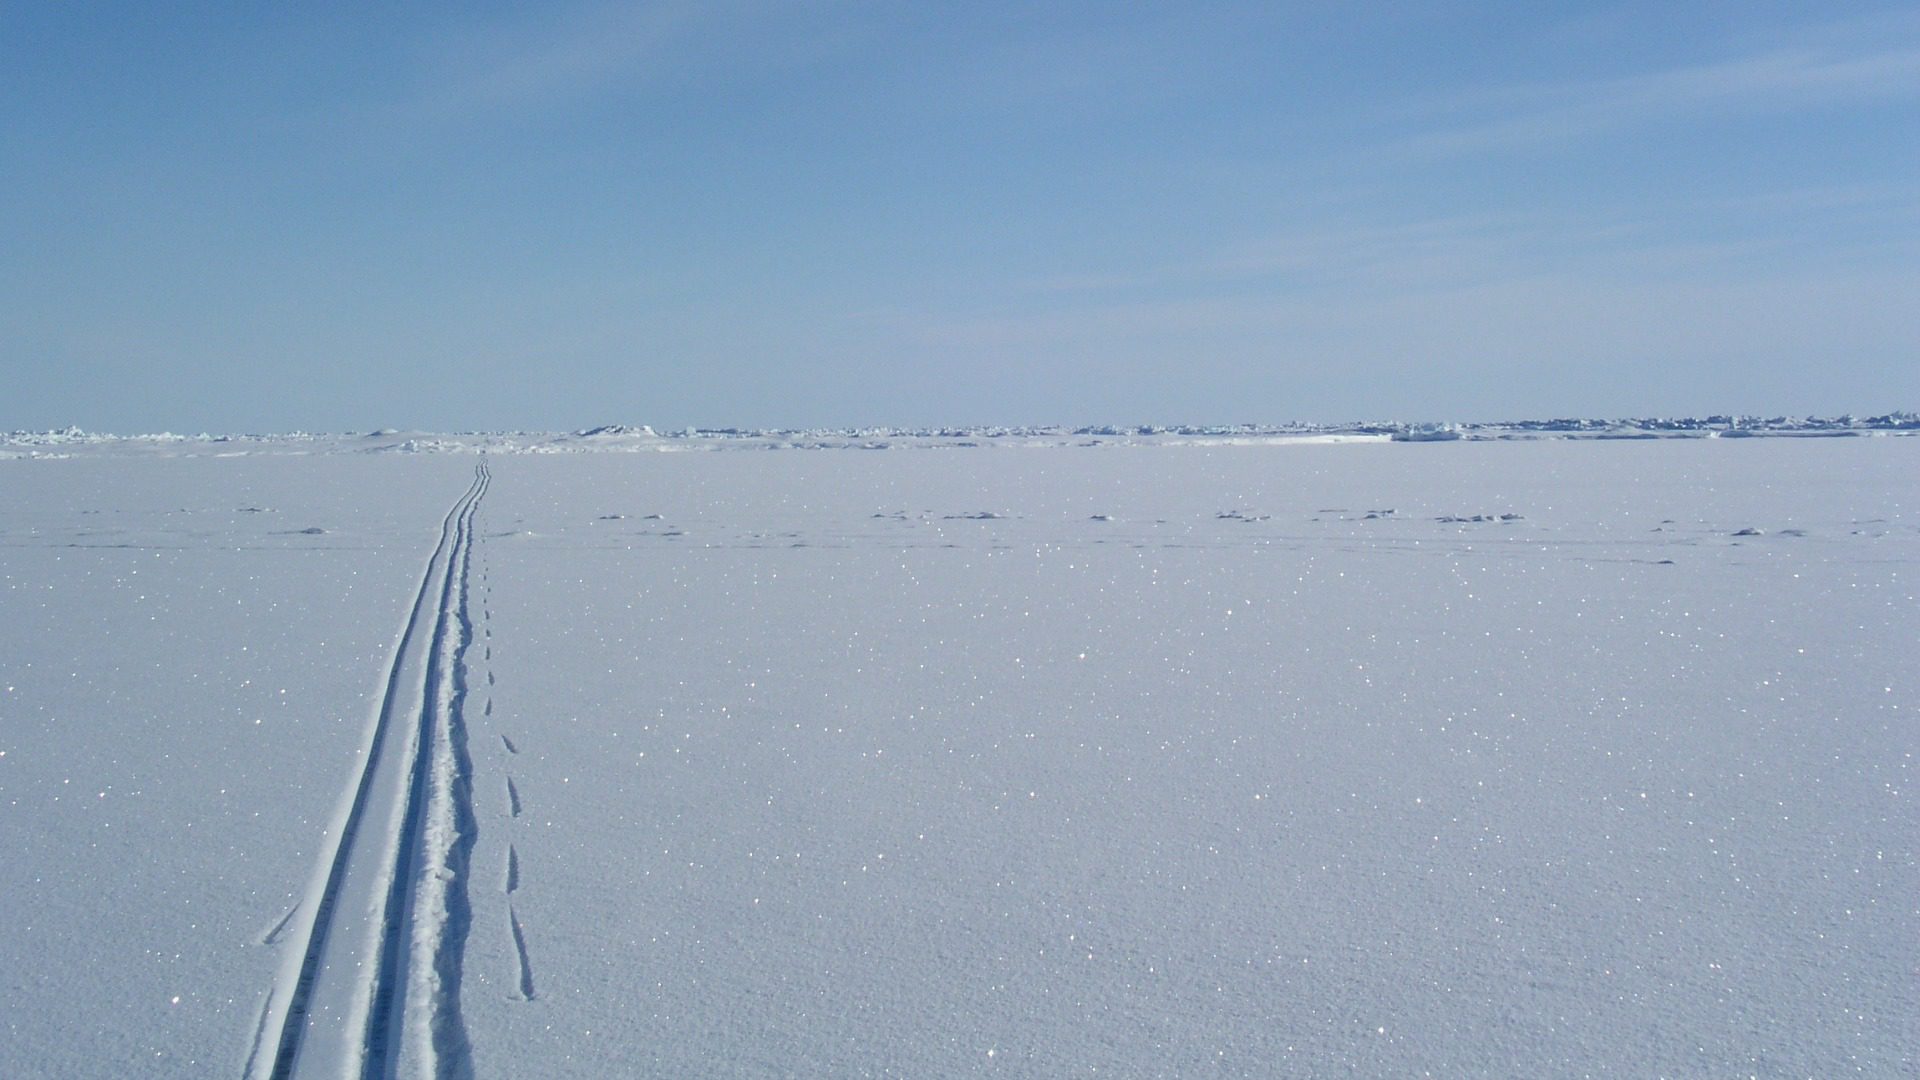 Des jeunes argentins ont apporté un exemplaire de Laudato si au pôle nord. (Flickr/Ben Saunders/CC BY-NC-ND 2.0)